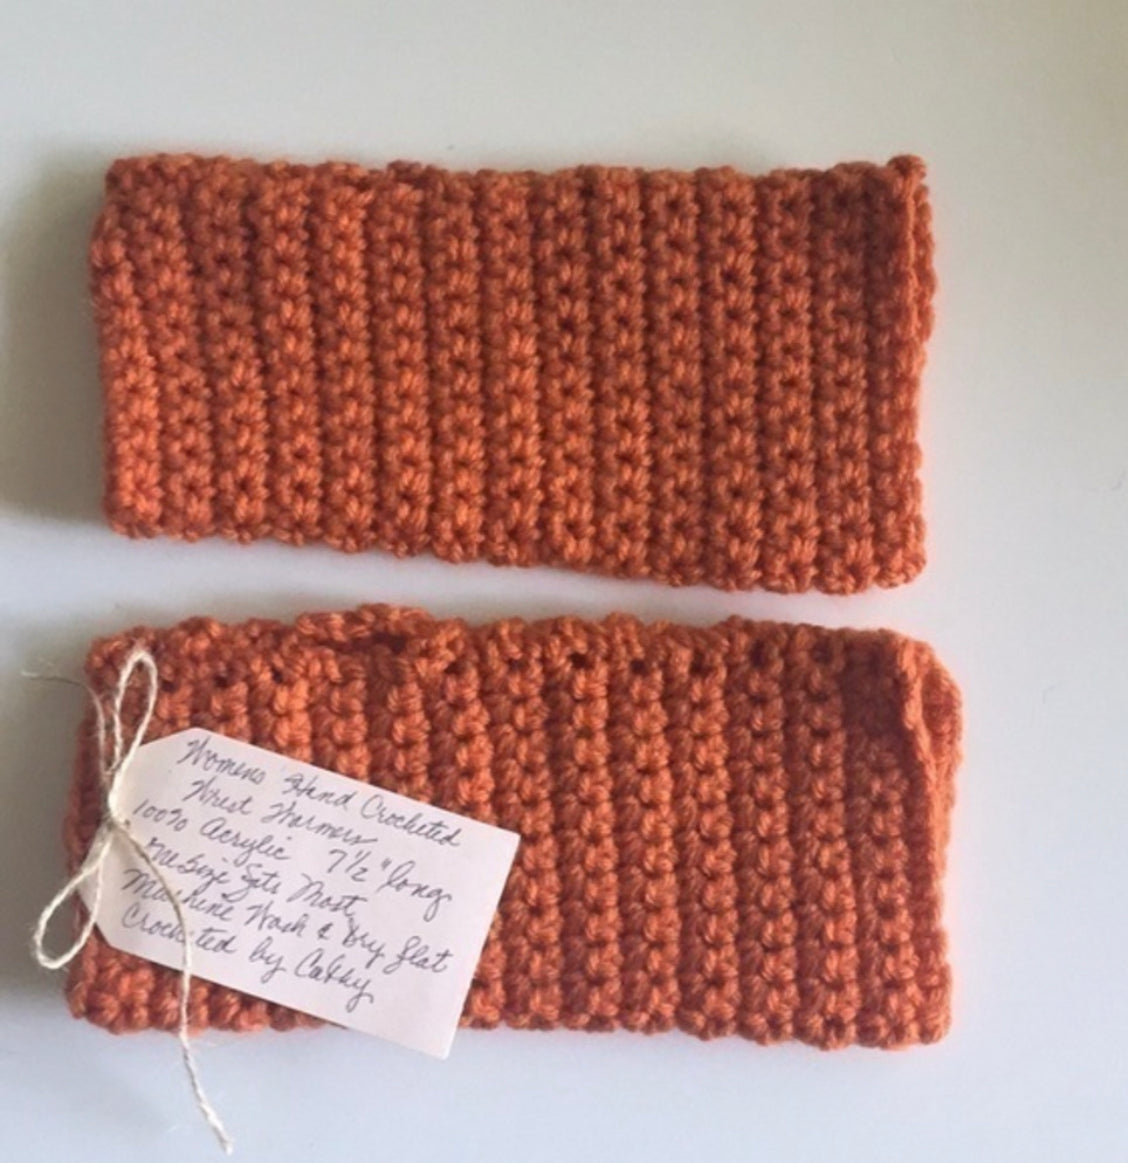 Gaming Texting Fingerless Gloves Rust Orange Crochet Knit Fall Winter Writing Tech Wrist Warmers Pumpkin